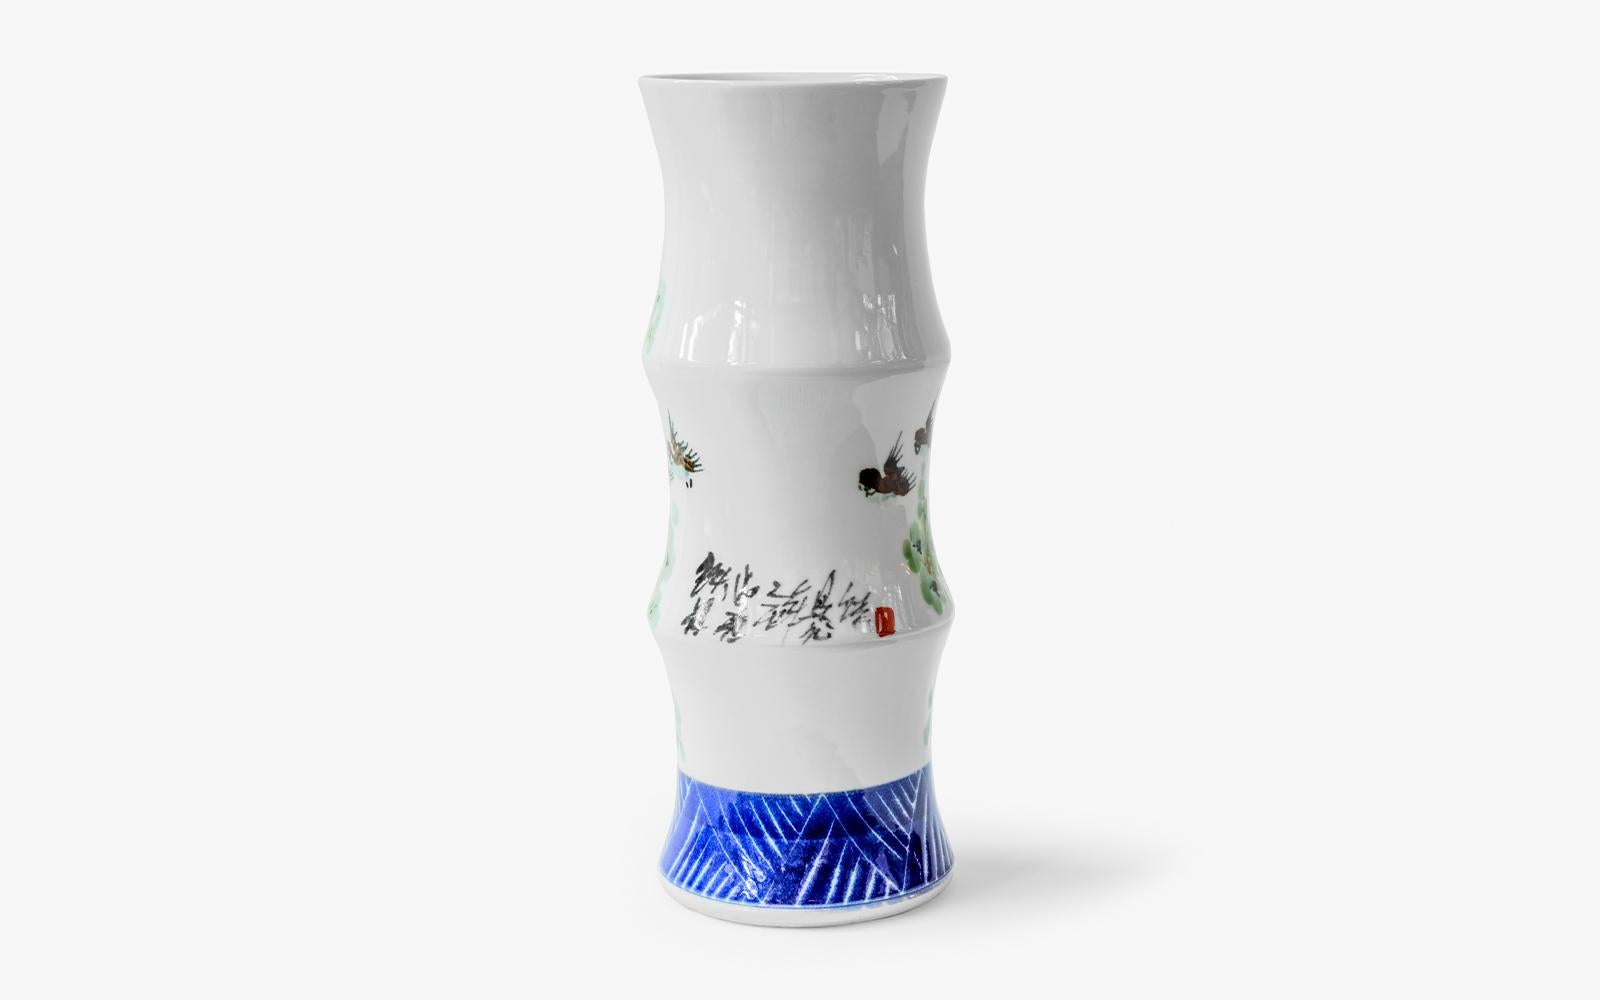 Chinese White & Blue Curved Handmade Porcelain Vase